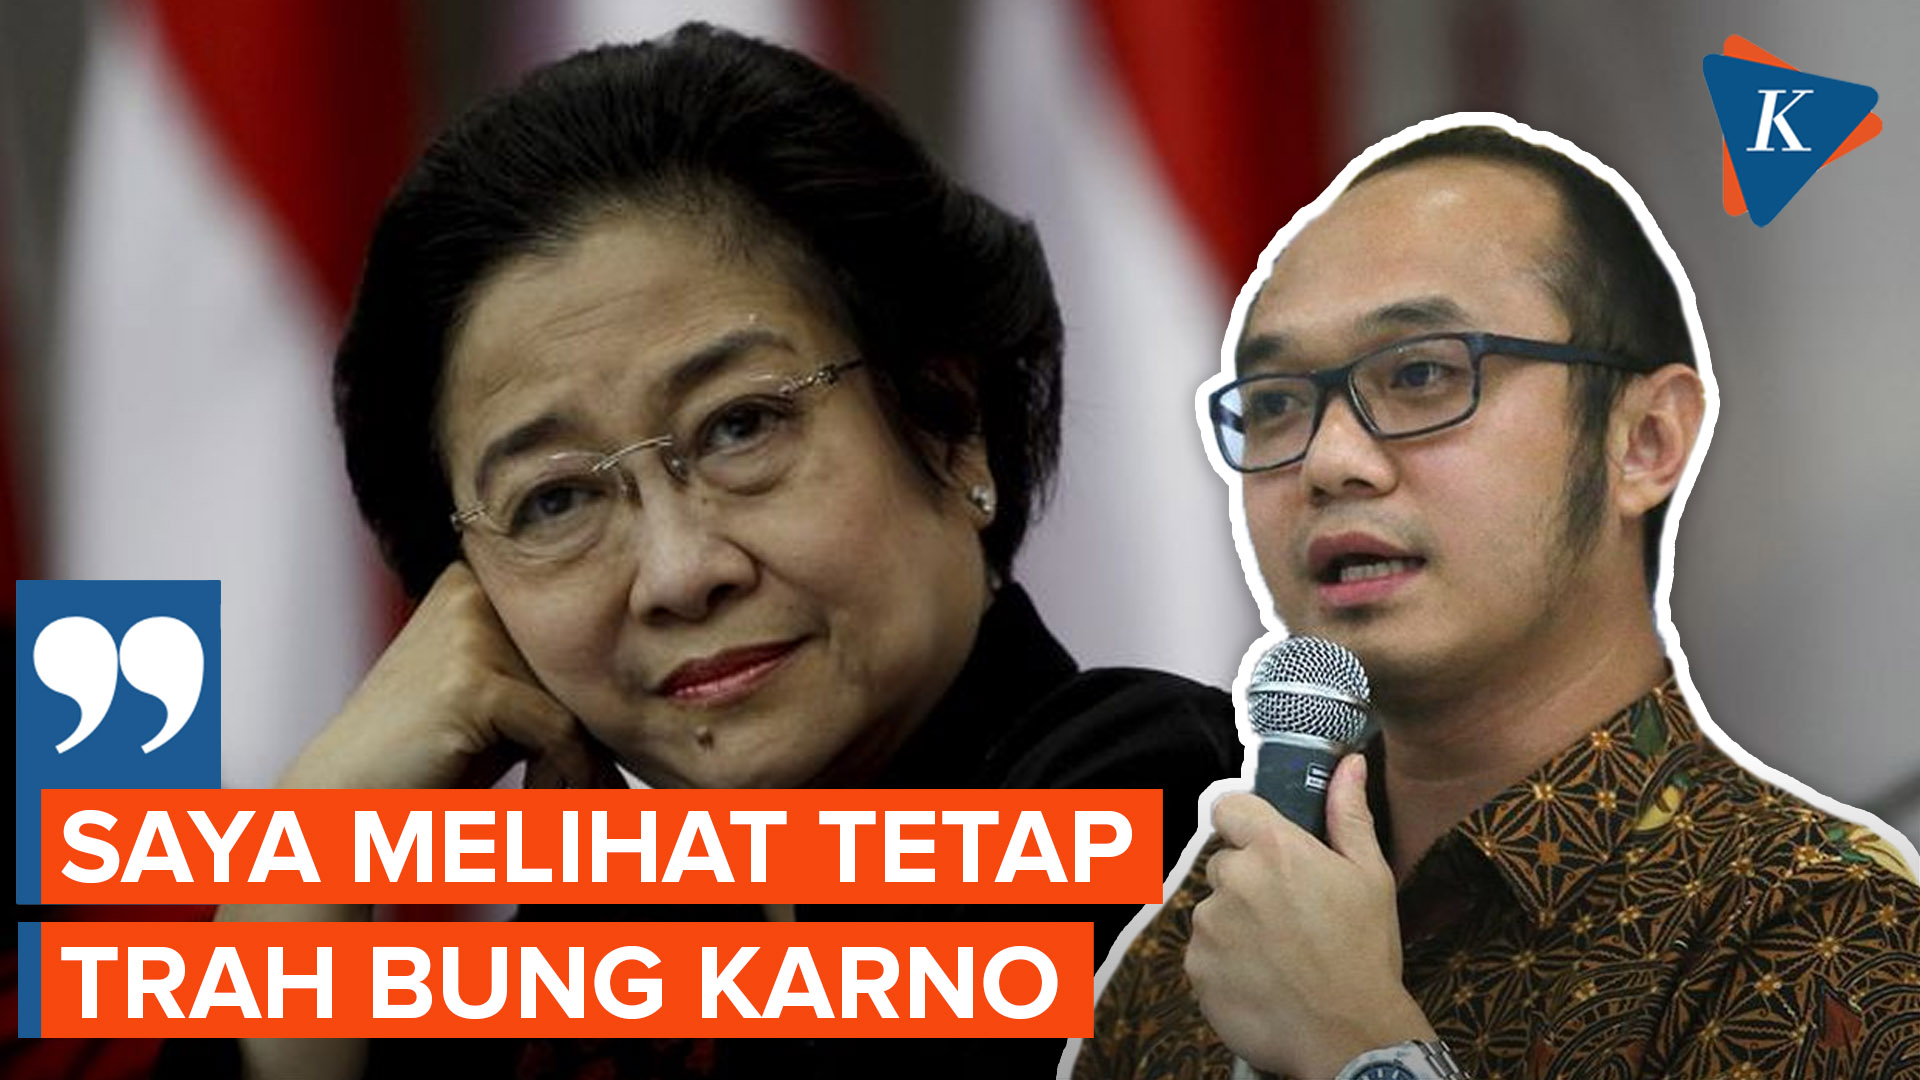 Pengganti Megawati di Kursi Ketum PDI-P Diprediksi dari Trah Soekarno